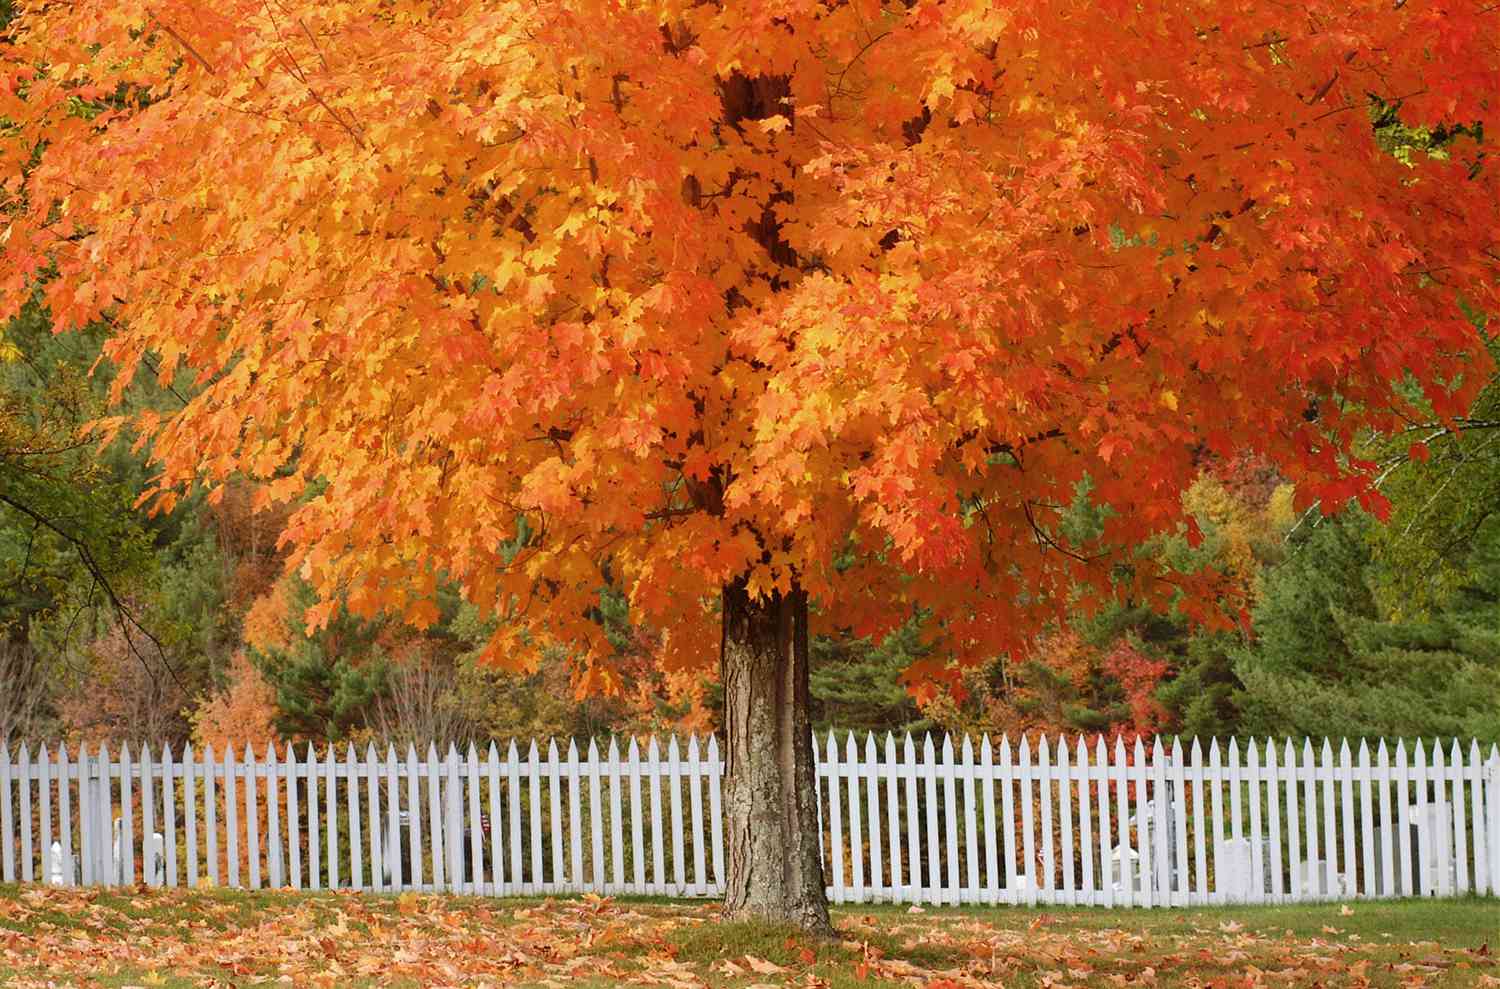 Zuckerahorn mit orangefarbenem Herbstlaub